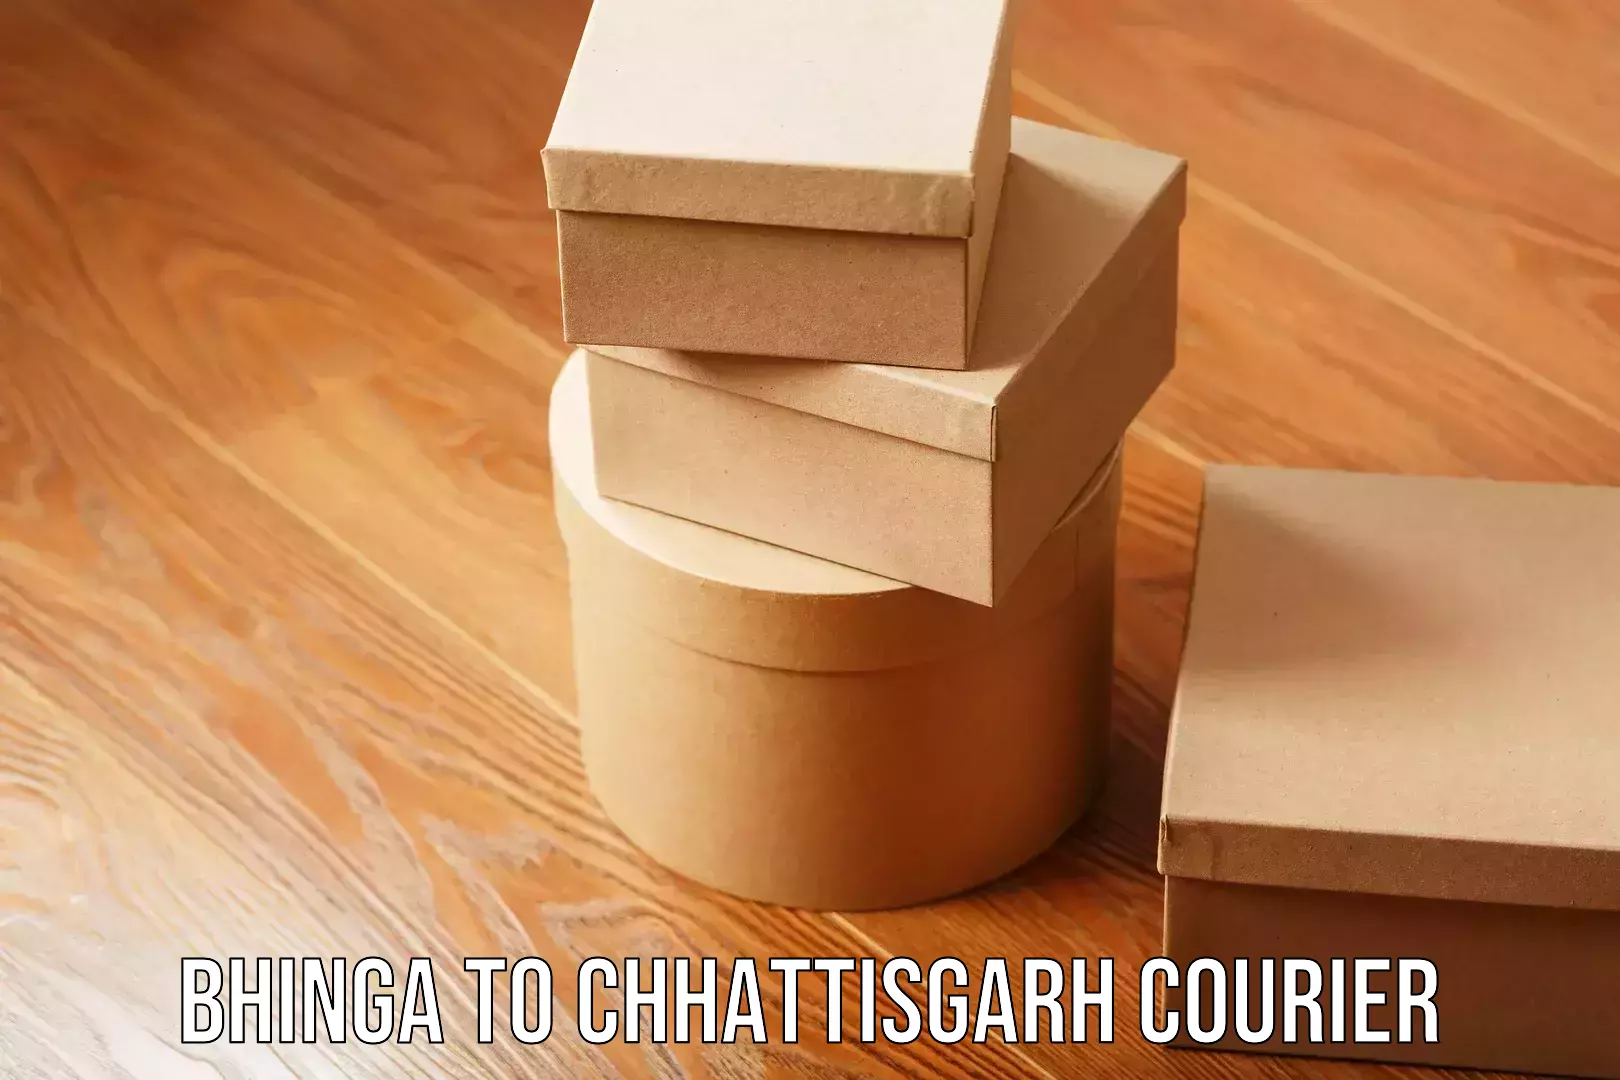 Express postal services Bhinga to Chhattisgarh